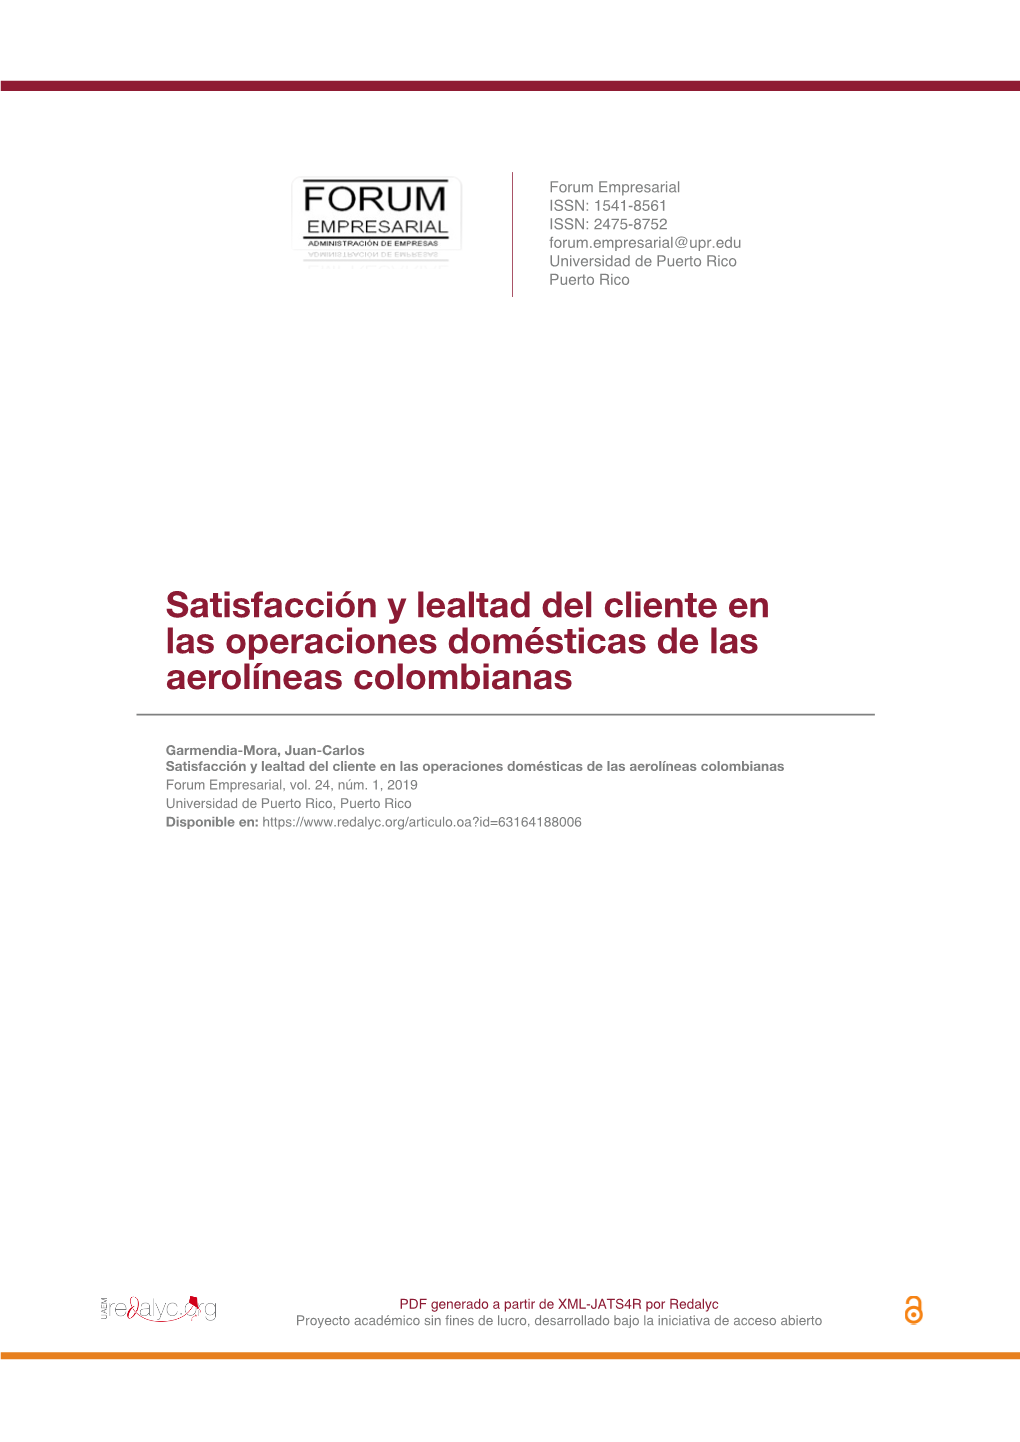 Satisfacción Y Lealtad Del Cliente En Las Operaciones Domésticas De Las Aerolíneas Colombianas